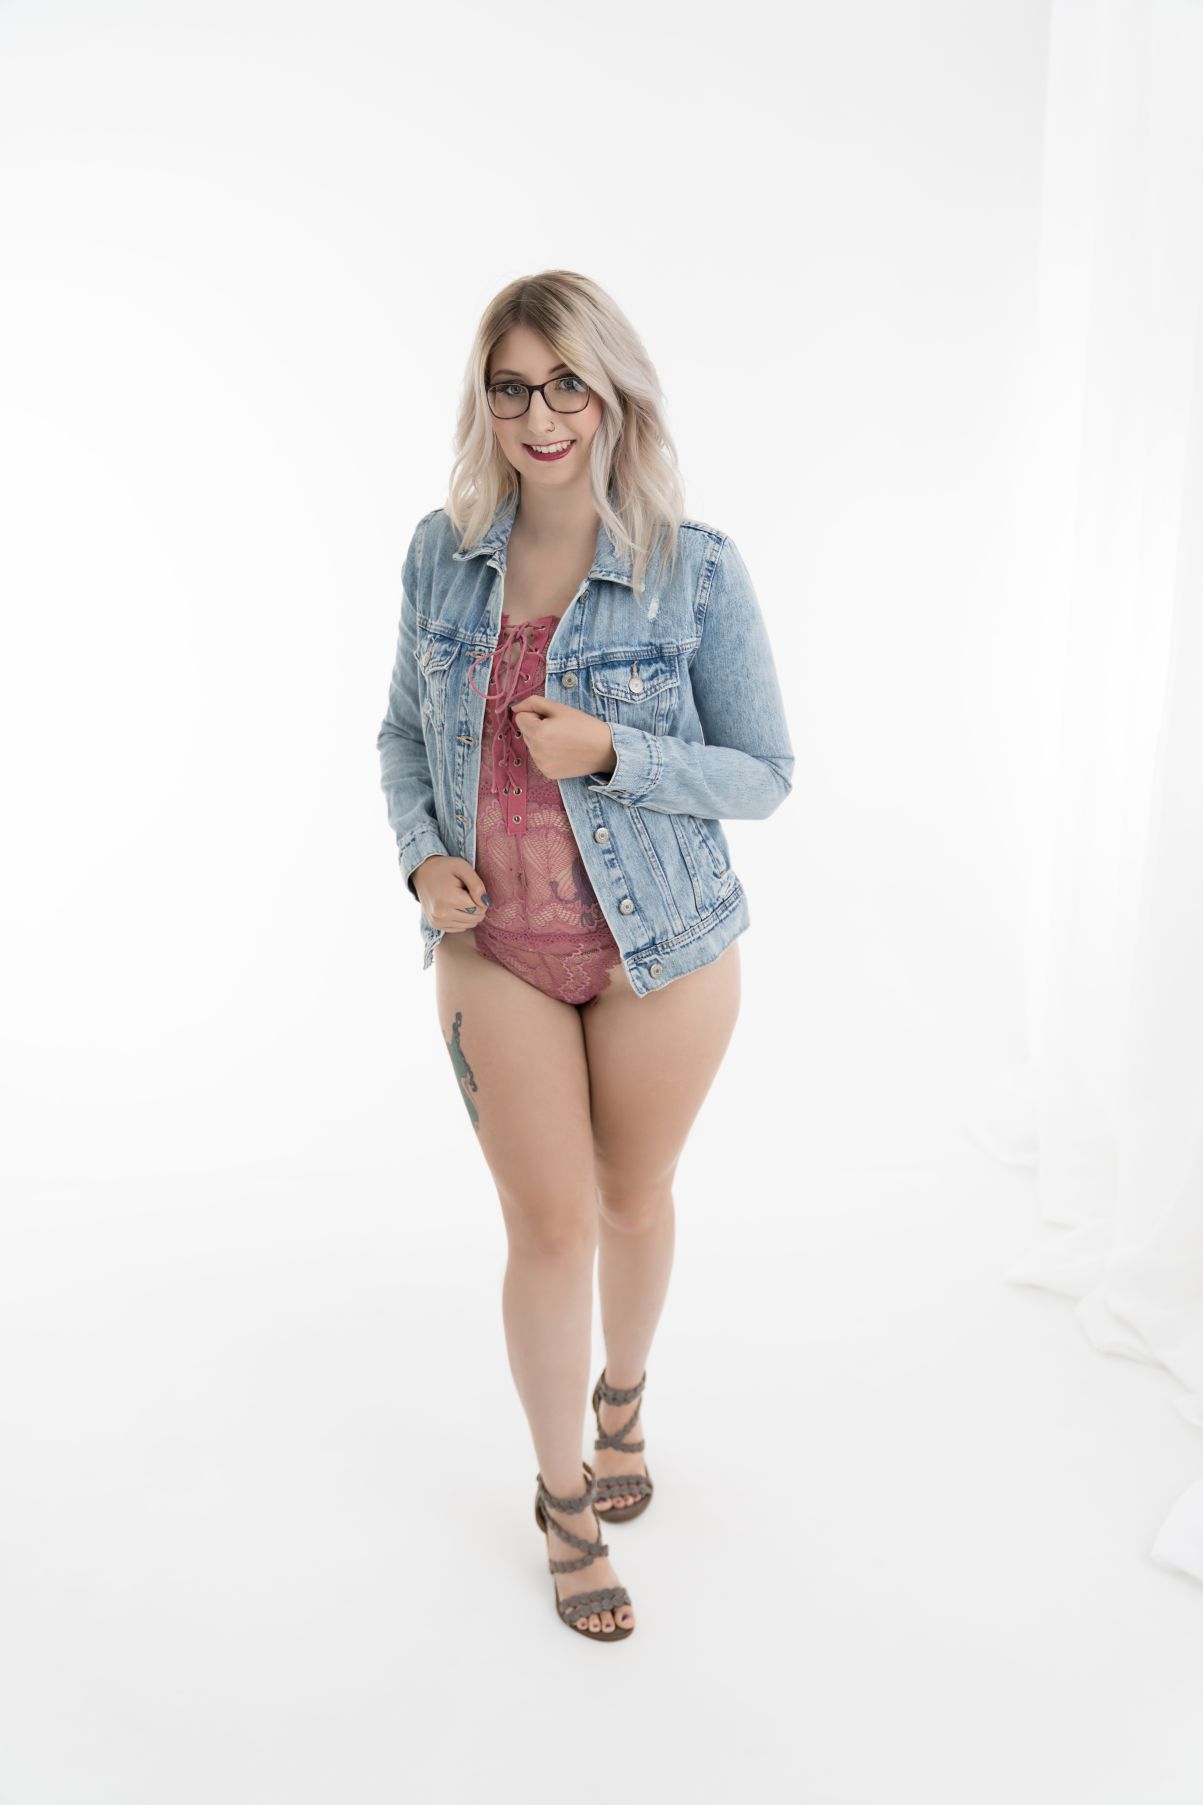 Intimate Boudoir Photoshoot jean jacket minimalist